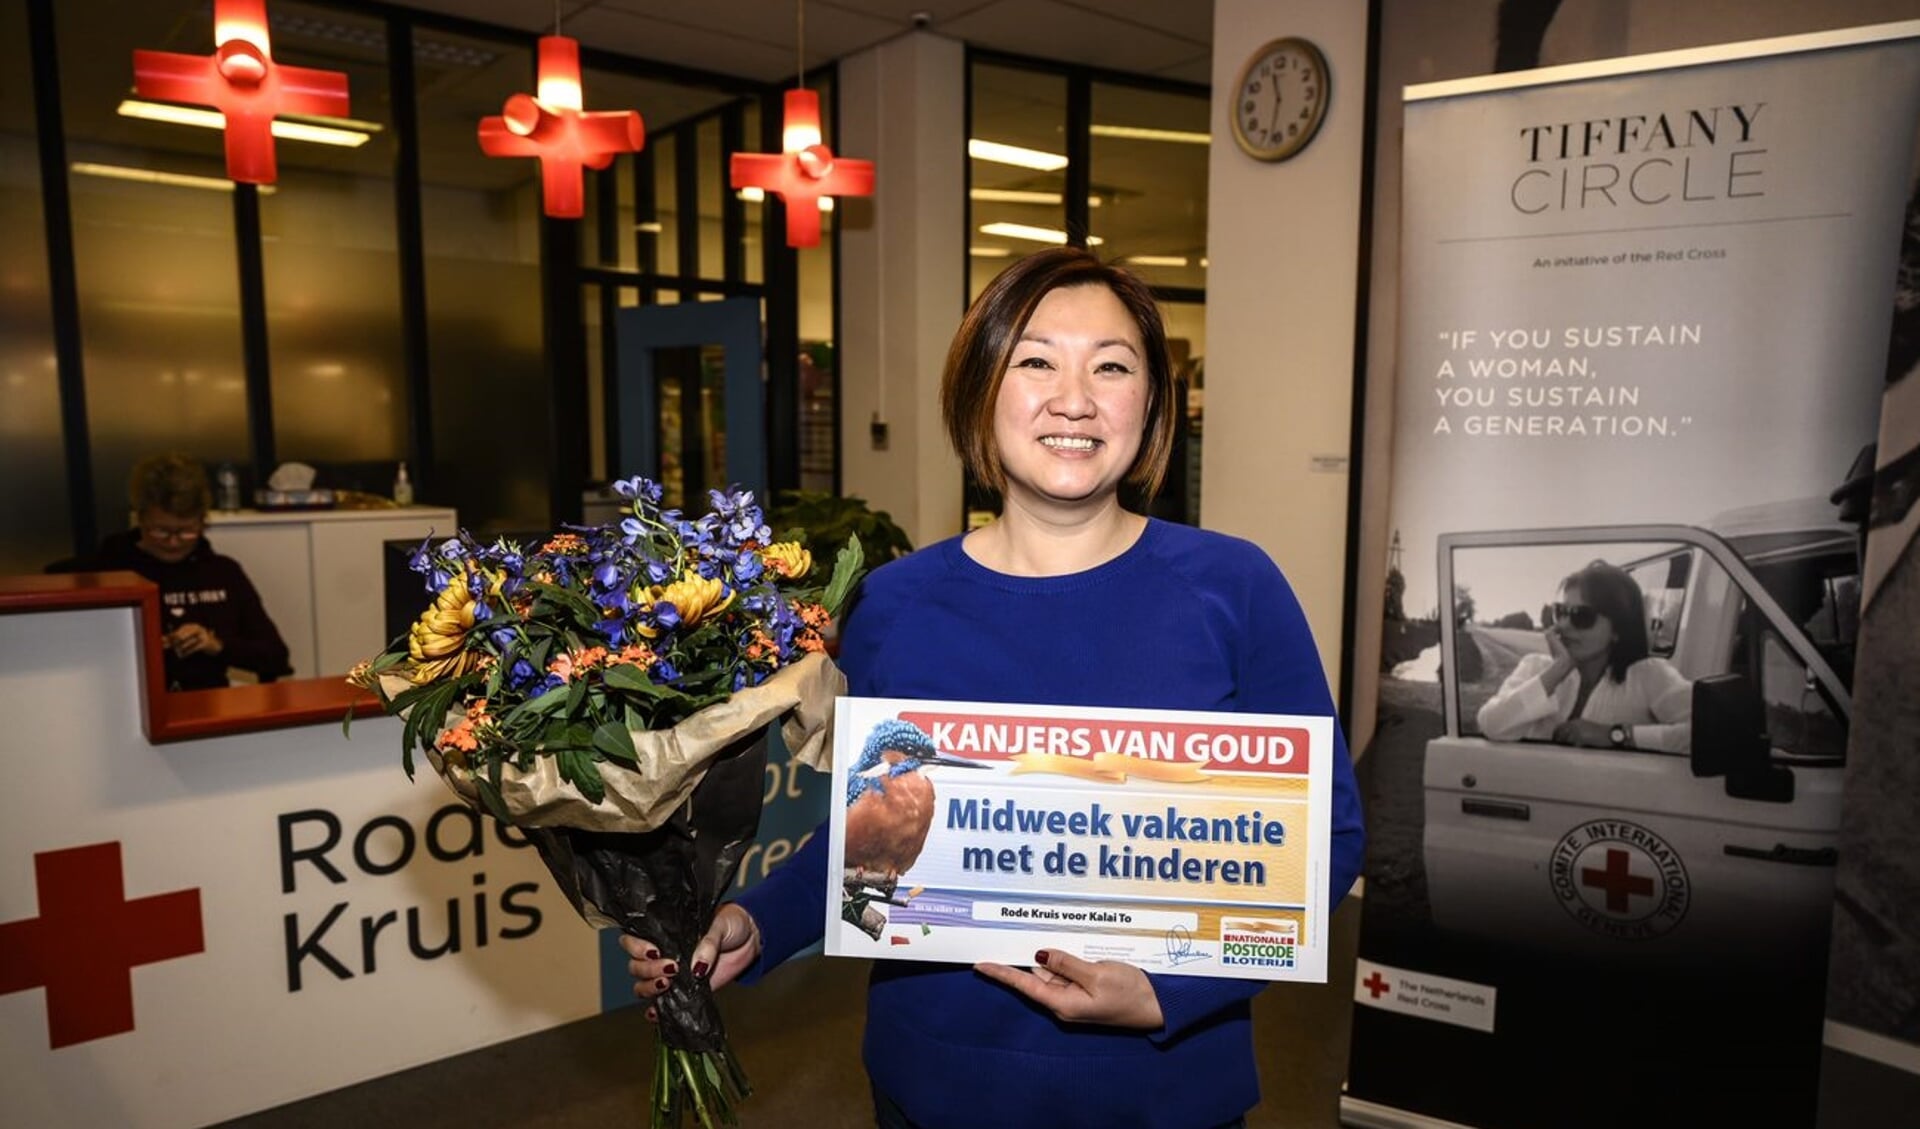 De wens van Kalai To uit Amsterdam-Noord gaat in vervulling dankzij een nominatie van Rode Kruis bij de Postcode Loterij.